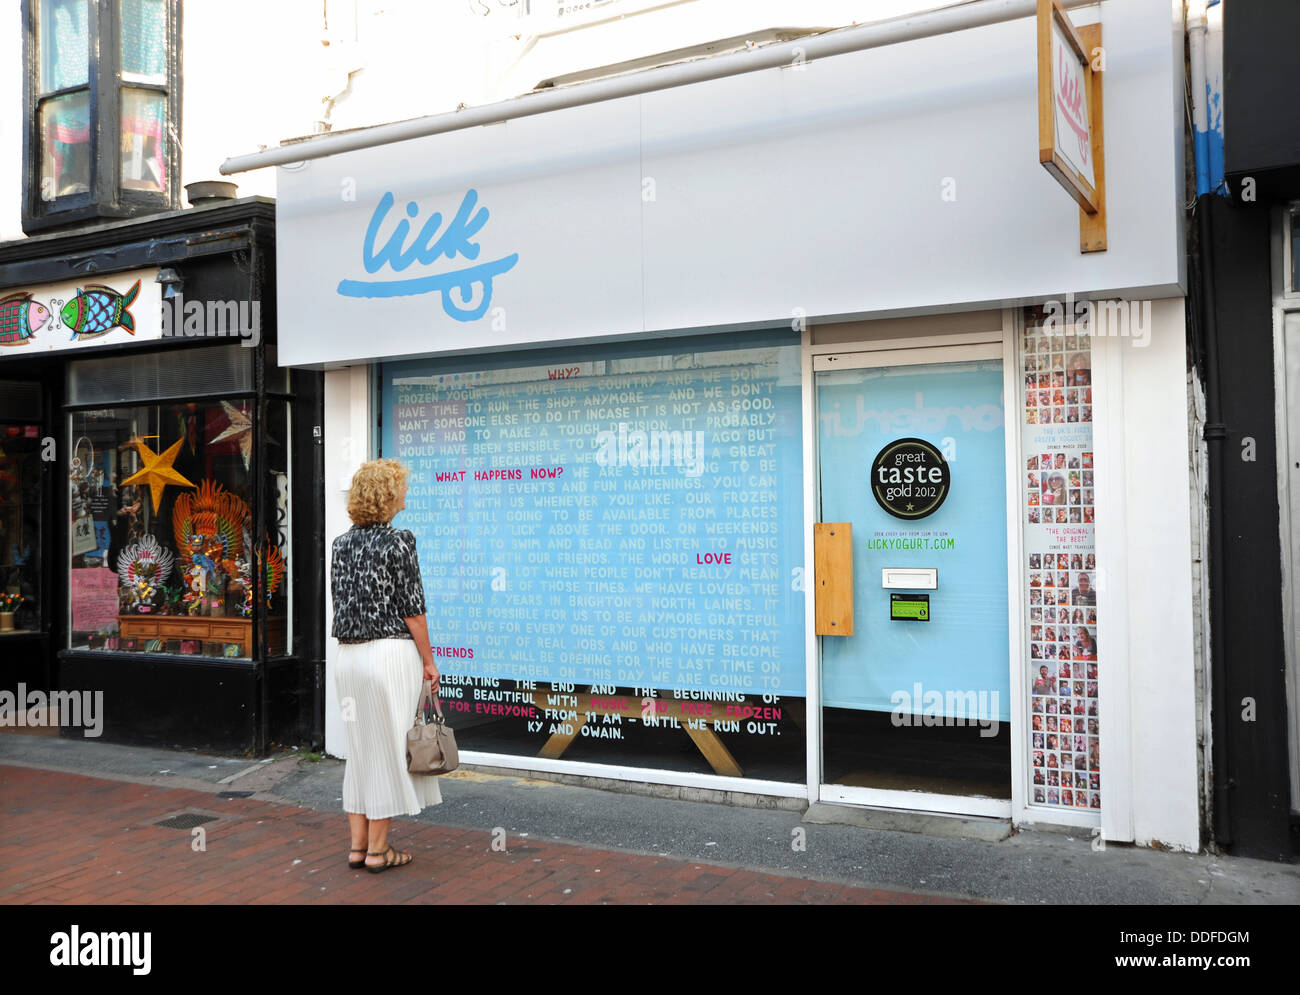 Botschaft an die Kunden aus der lecken Frozen Yogurt Shop in North Laine Bereich von Brighton, die erklären, warum sie geschlossen sind. Stockfoto